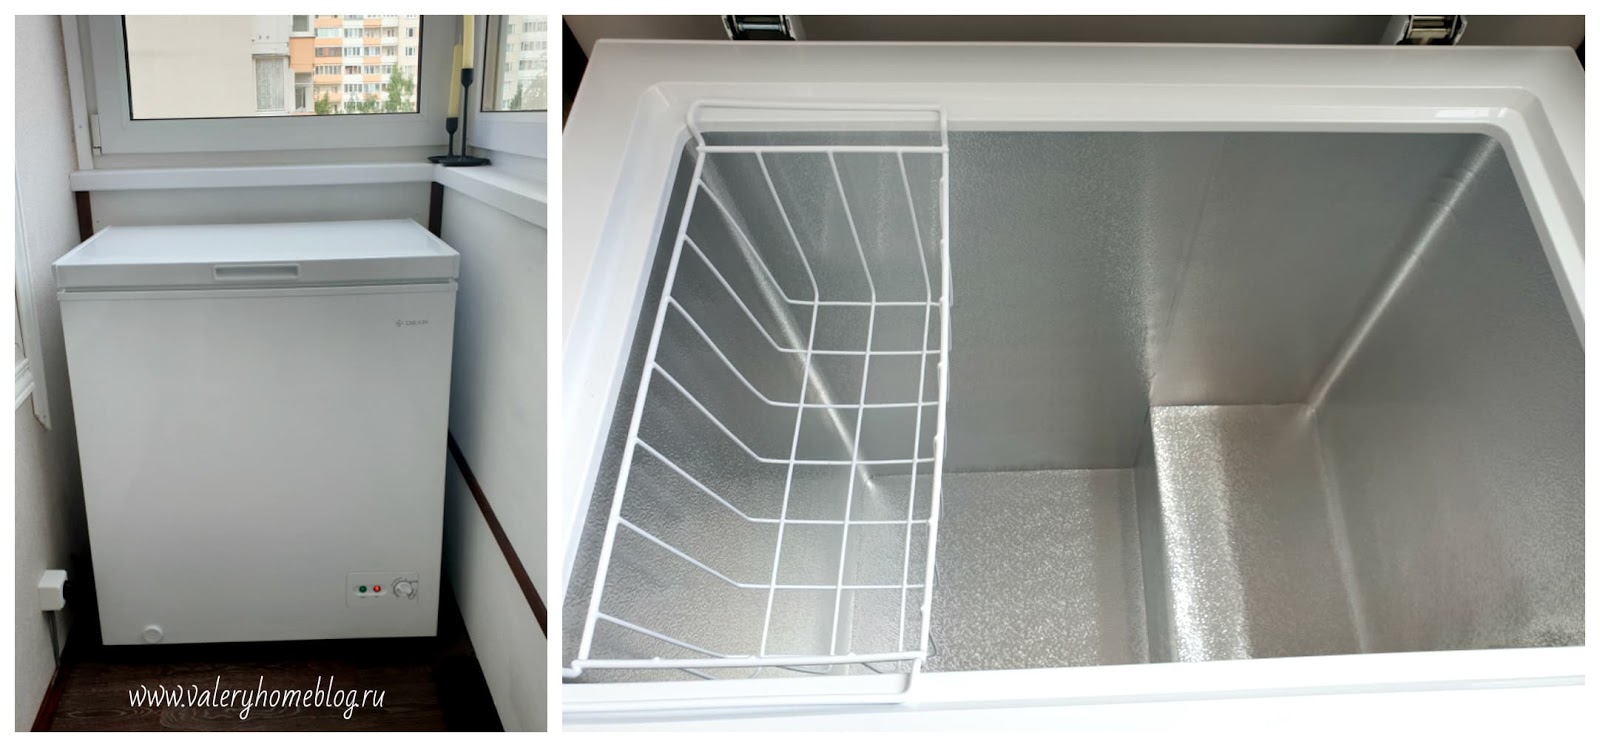 Можно ли эксплуатировать холодильник в неотапливаемом помещении